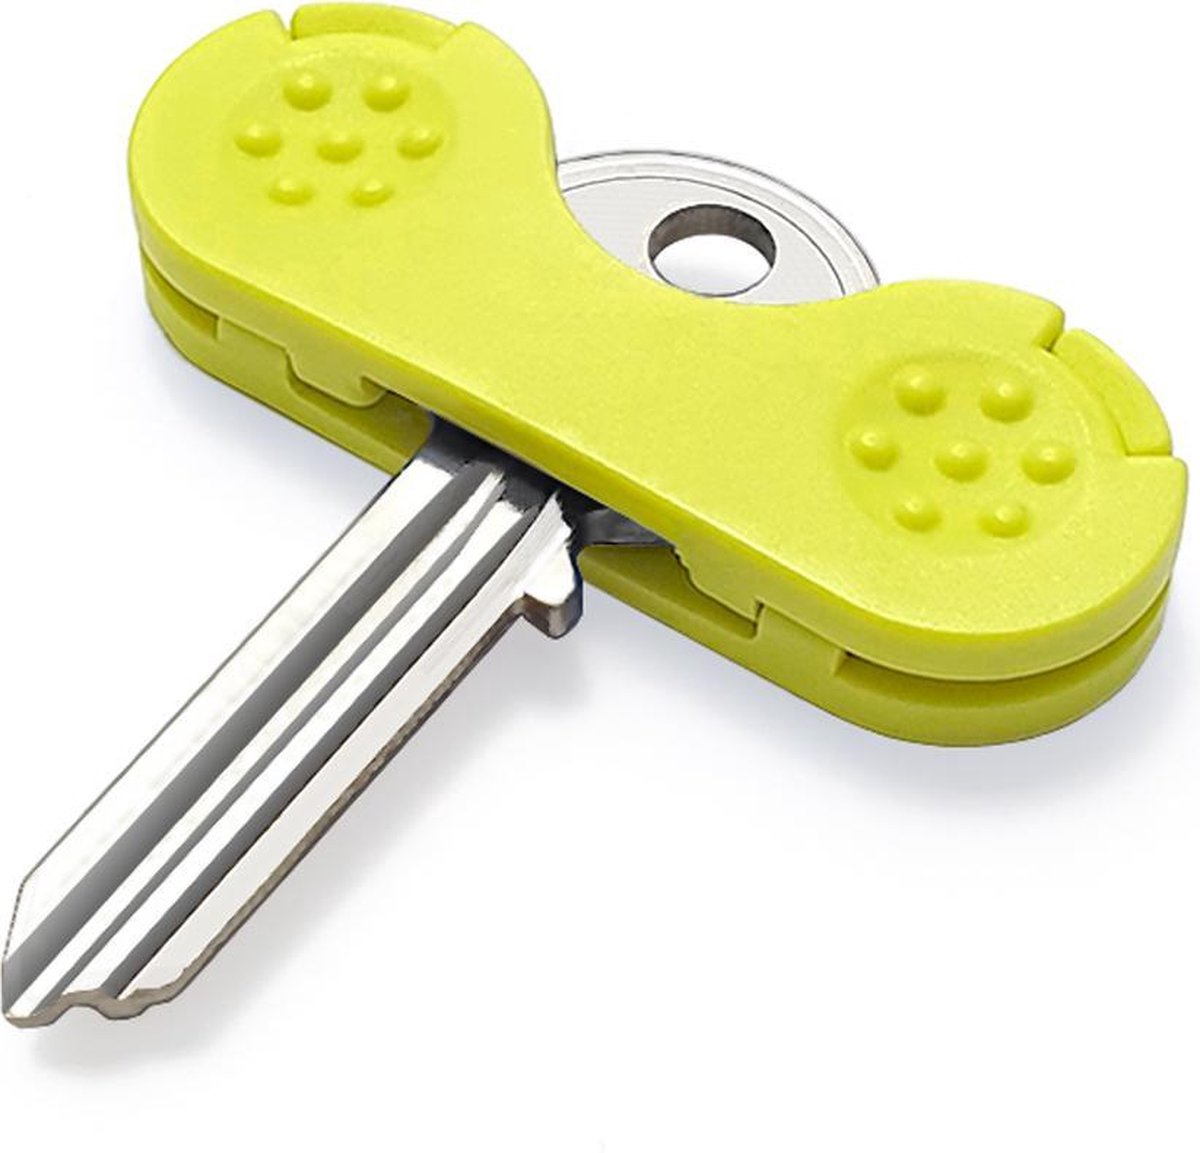 Keywing sleutelhulp: groen